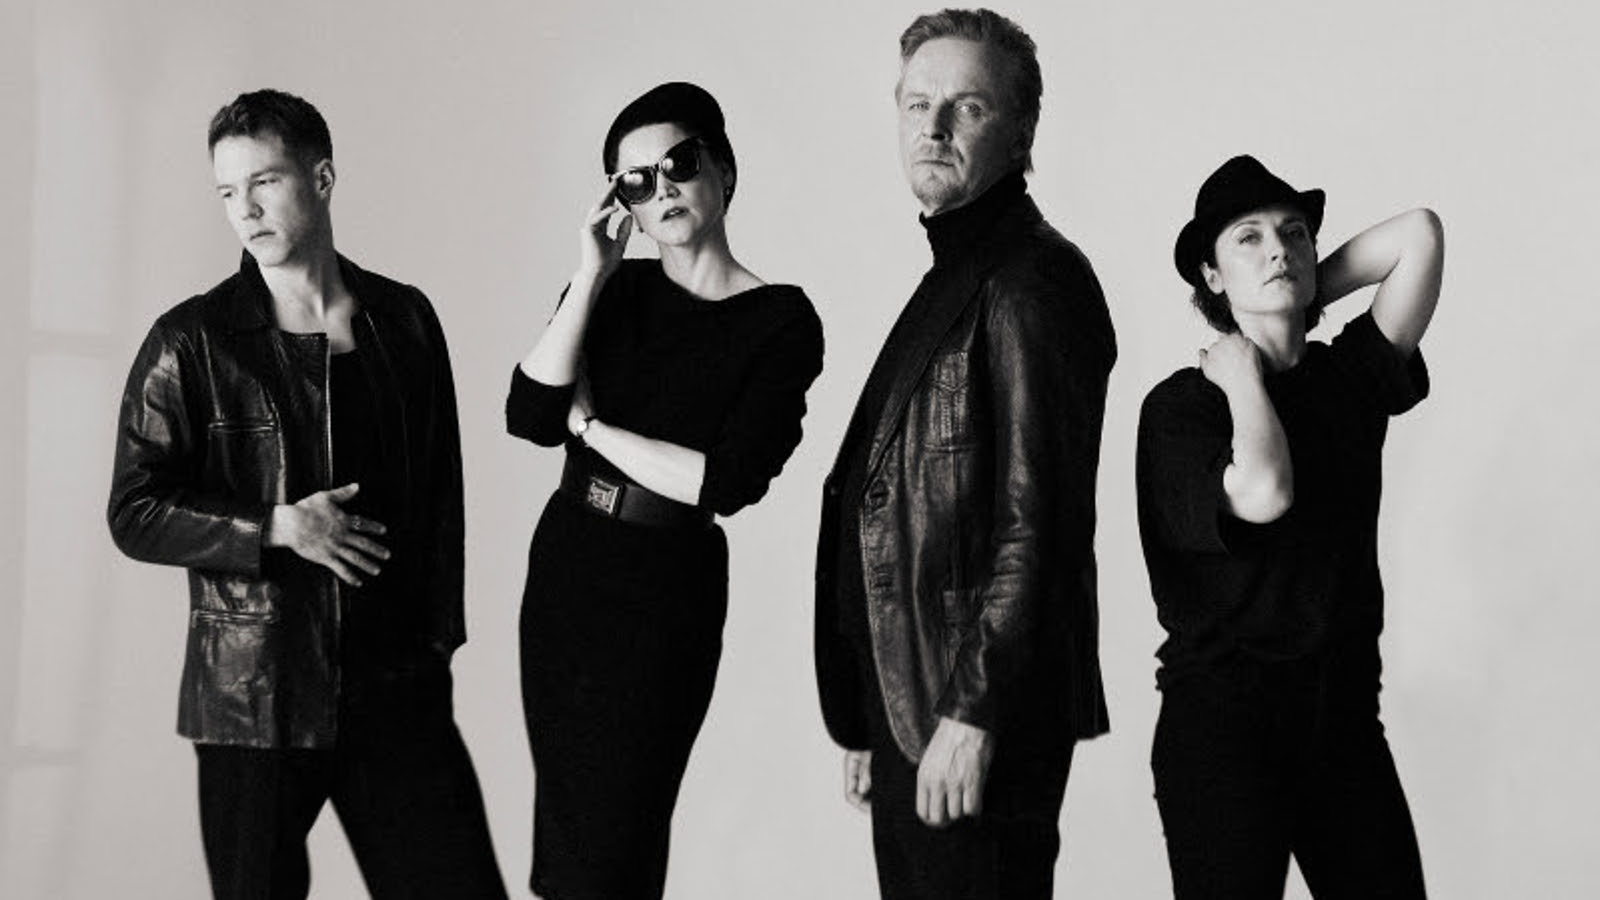 Kuvassa ovat Olavi Uusivirta, Anna-Maija Tuokko, Eero Aho ja Elena Leeve seisomassa mustissa vaatteissa. Kuva on musta-valkoinen.